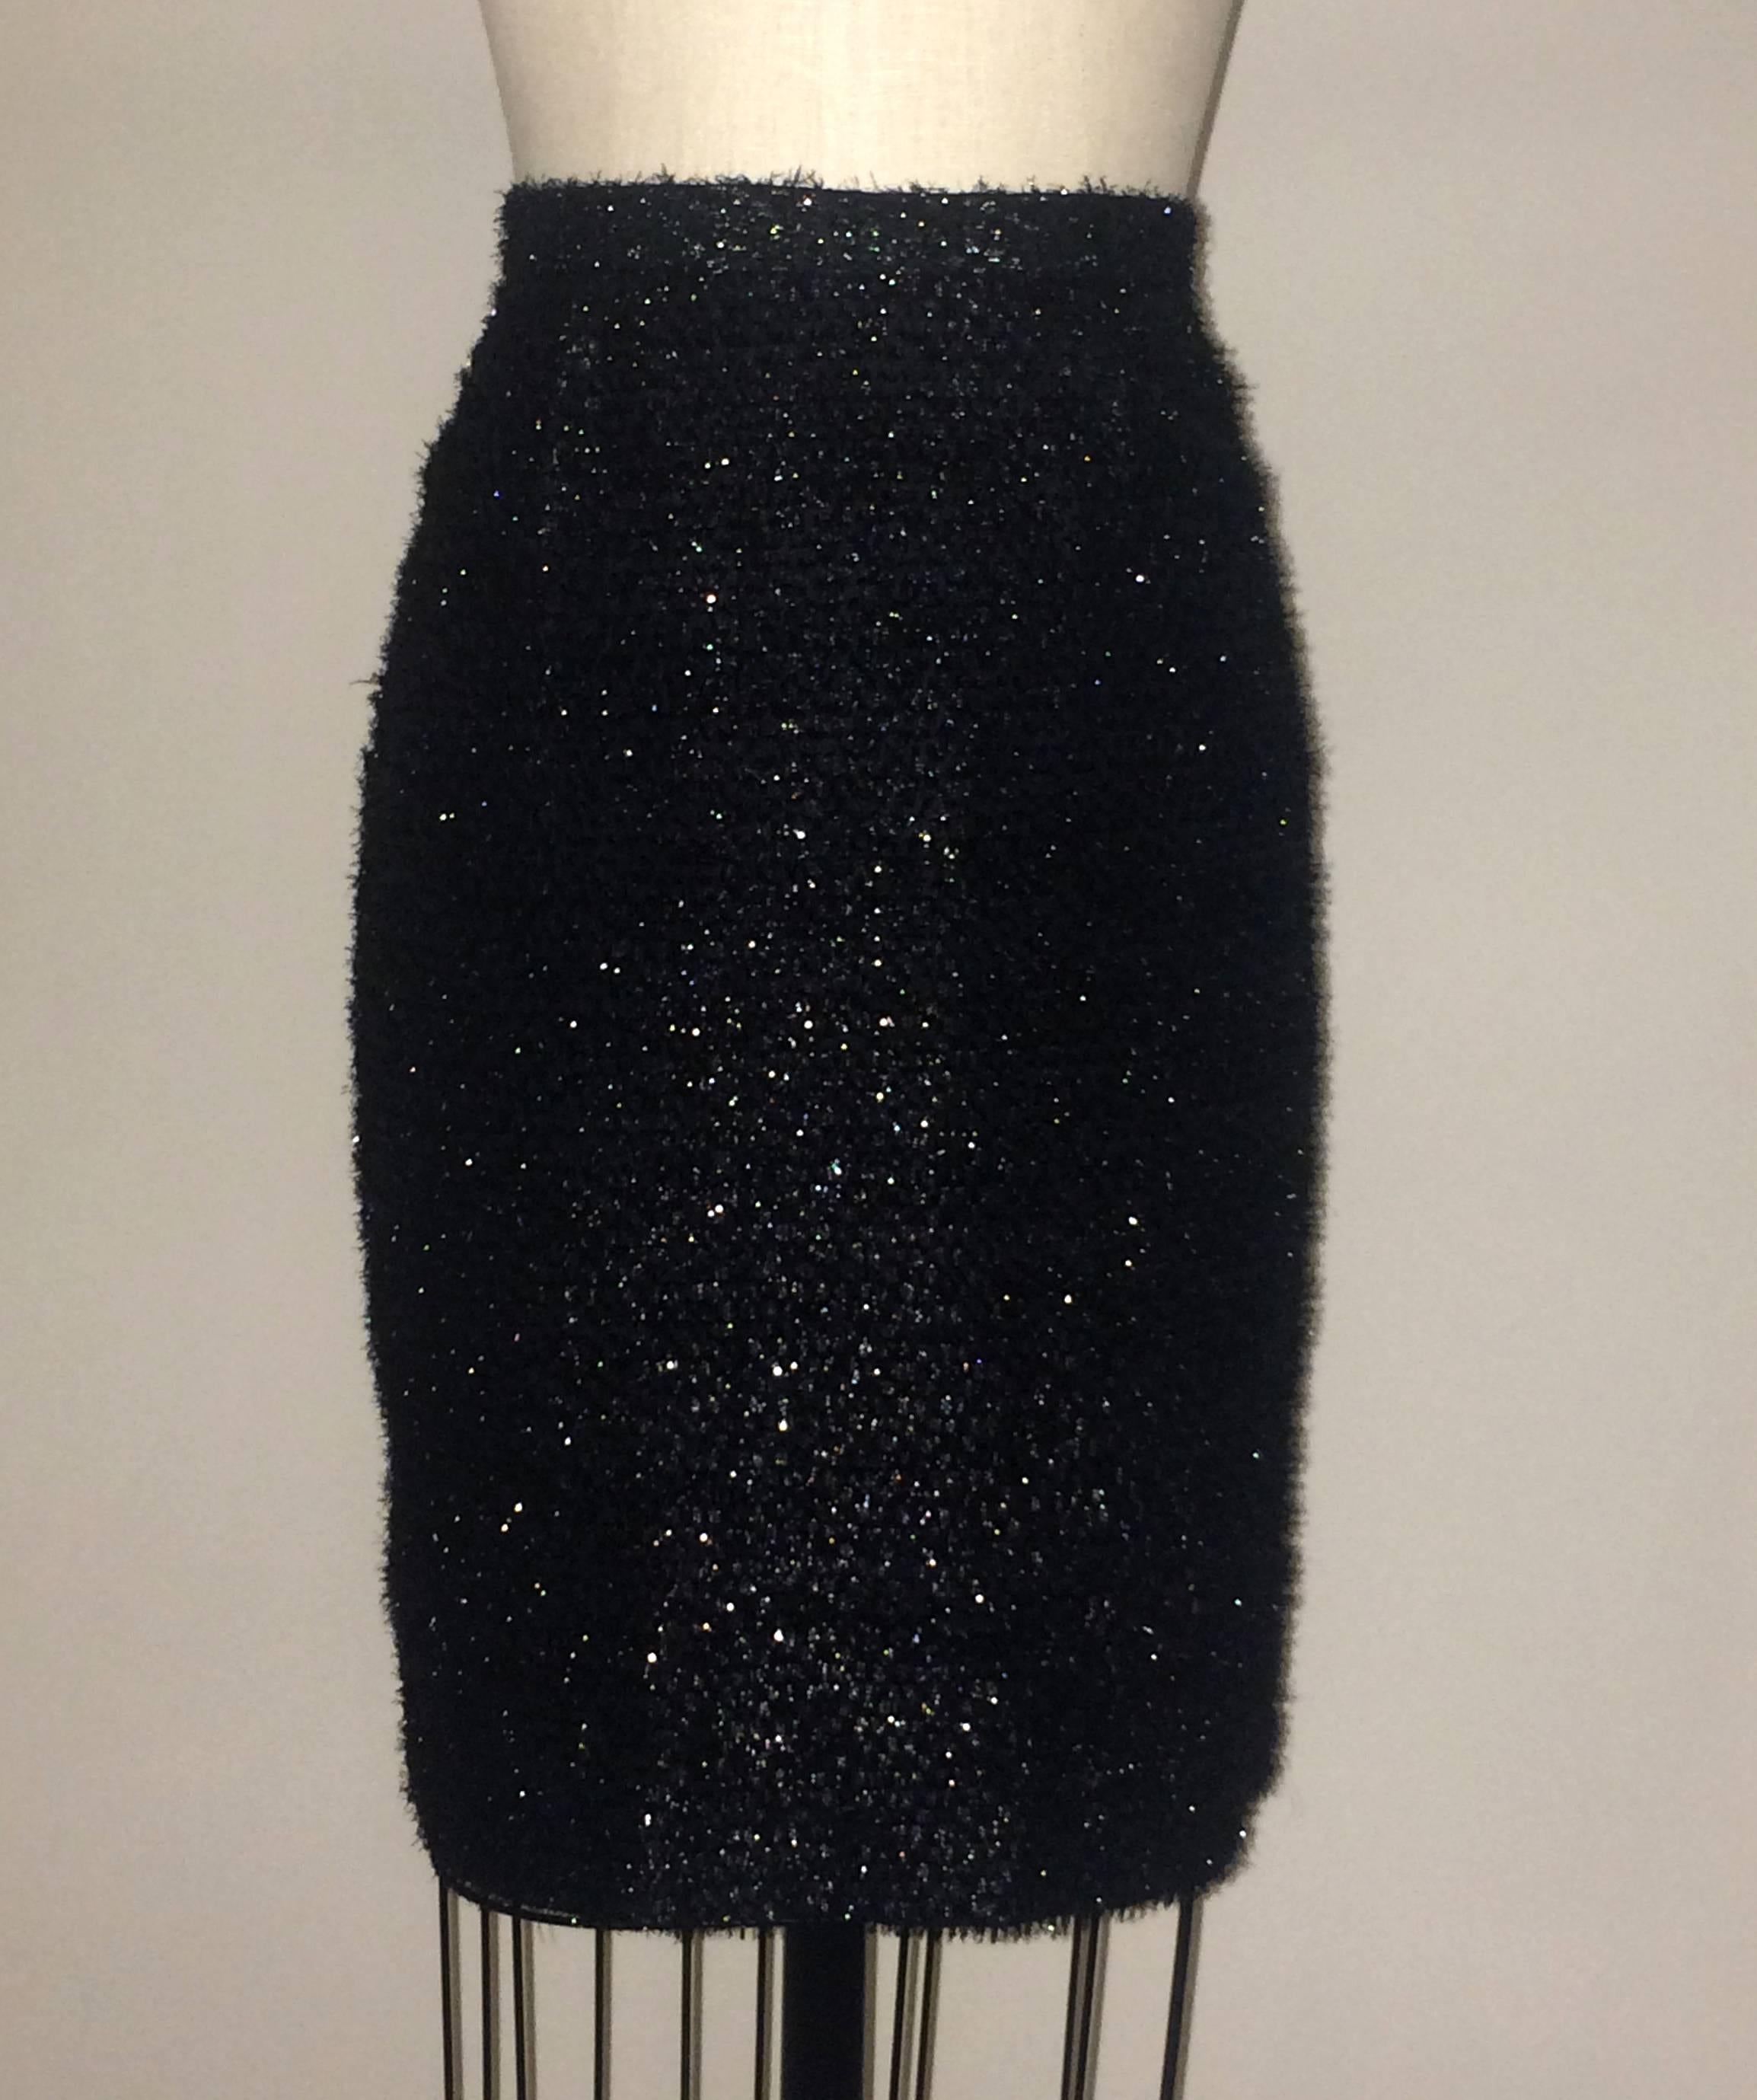 Stephen Sprouse 'Sprouse' jupe crayon noire vintage des années 1980 avec frange métallique en cils. Fermeture éclair, crochet et bouton au dos.

80% rayonne, 20% polyester. Entièrement doublé en 100% acétate.

Fabriqué en Corée. 

Taille 8. Courant